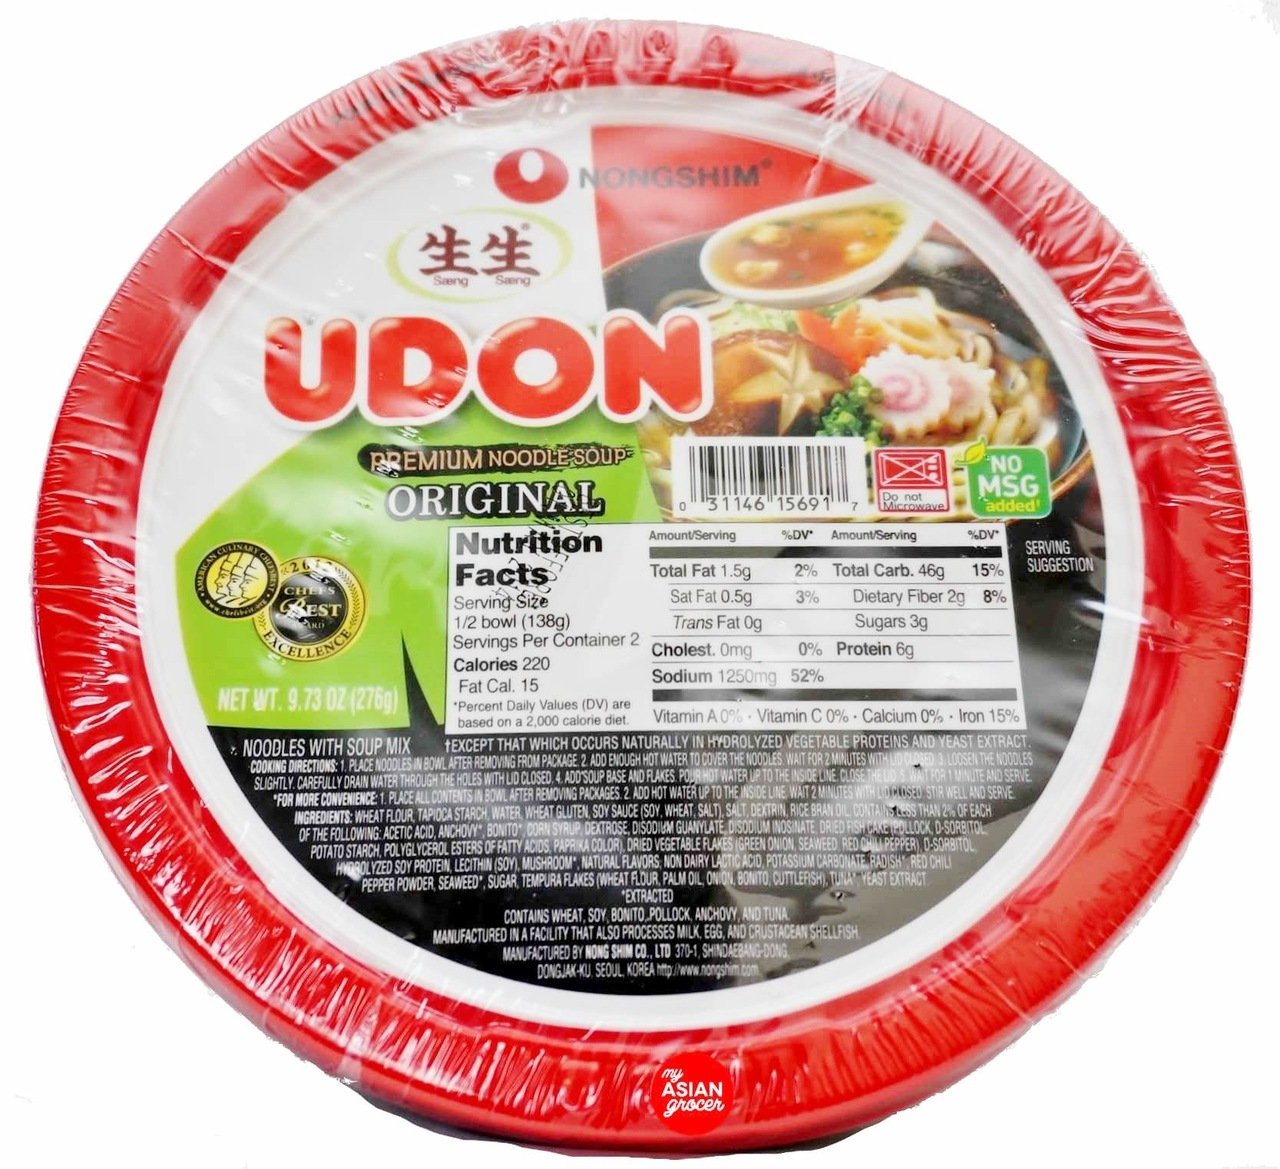 NongShim Udon Premium Bowl Noodle Soup 276g